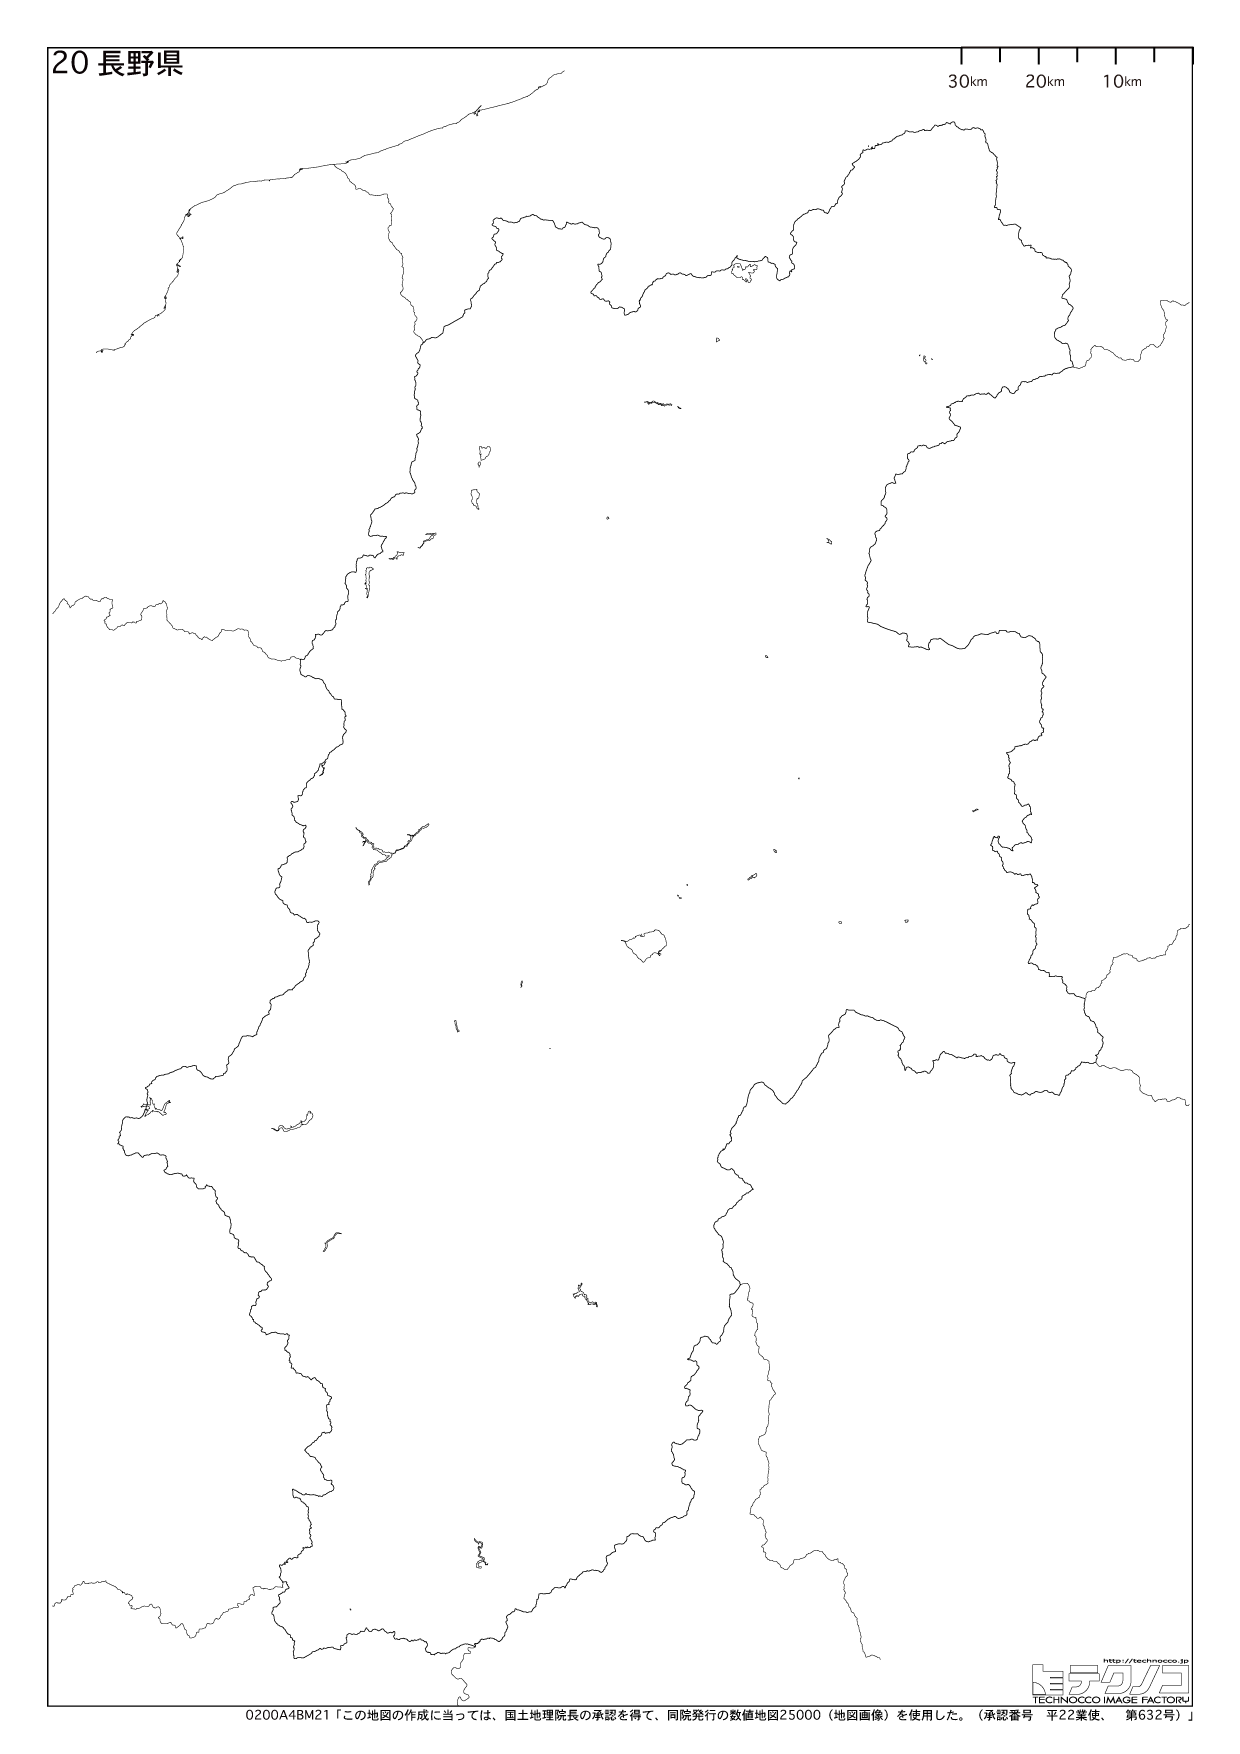 長野県の白地図と市町村の合併情報